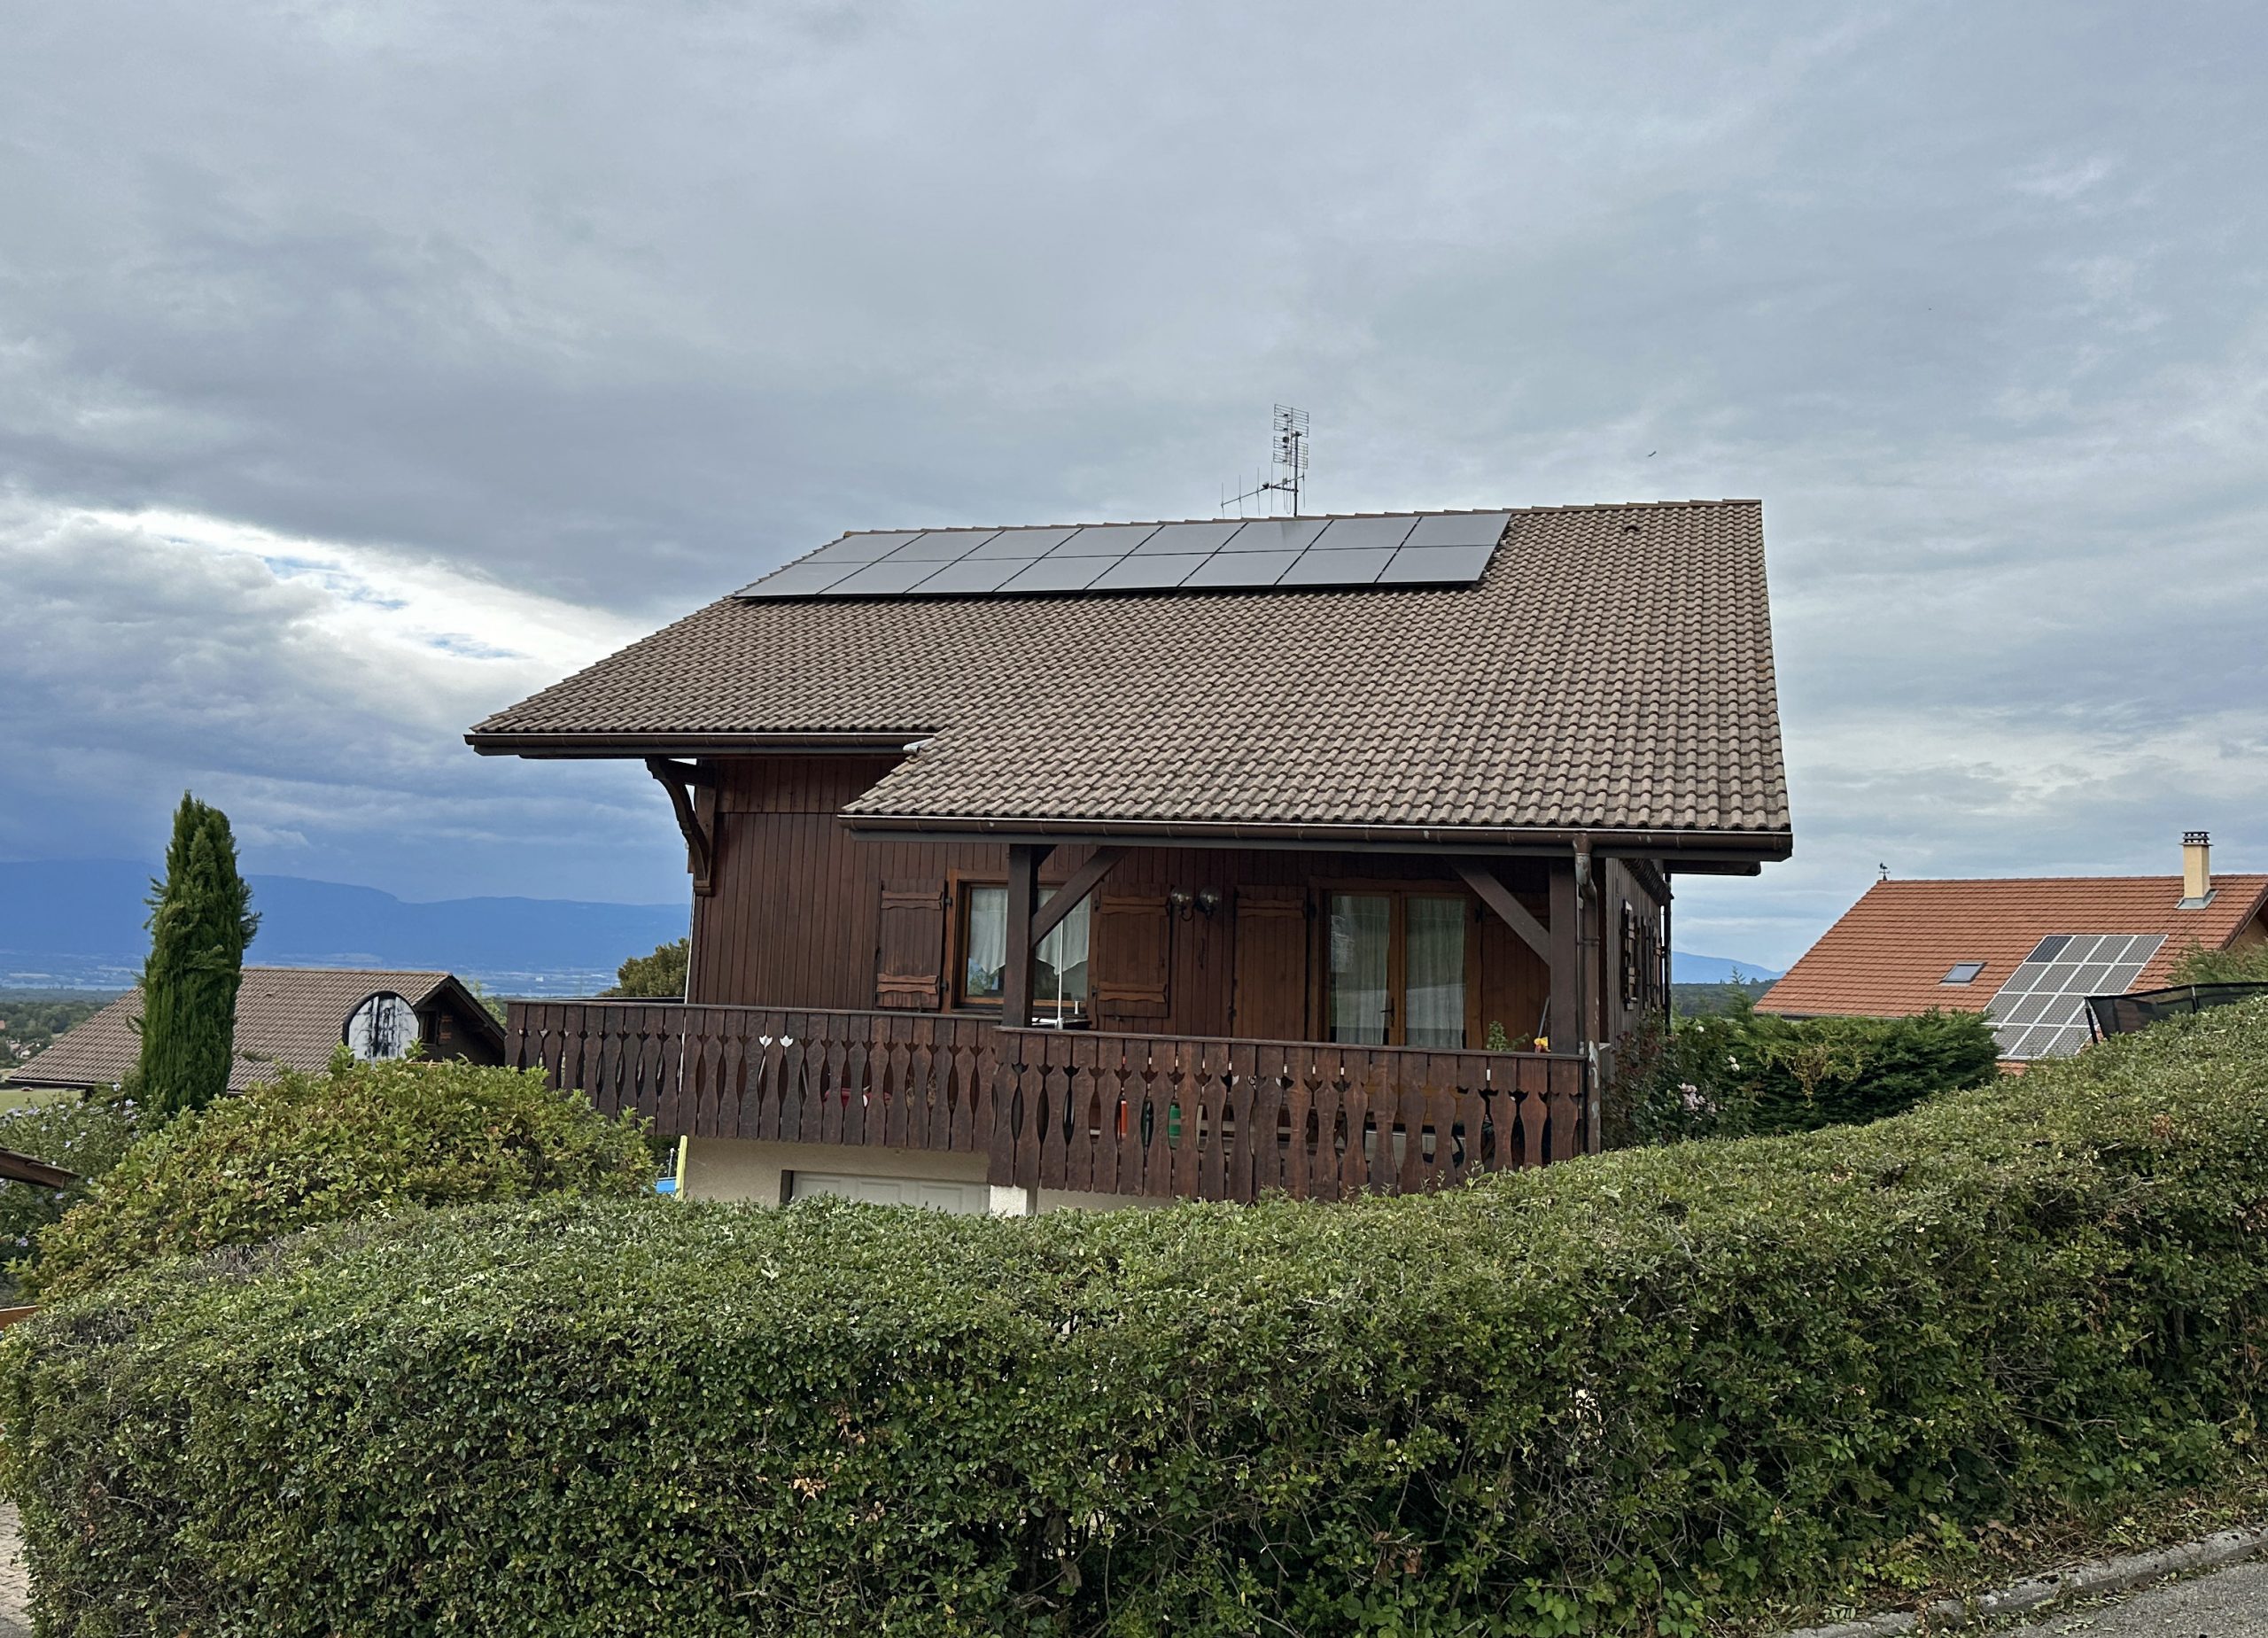 16 panneaux solaires installés à Saint-Cergues à la frontière entre la Suisse et la France en Haute-Savoie